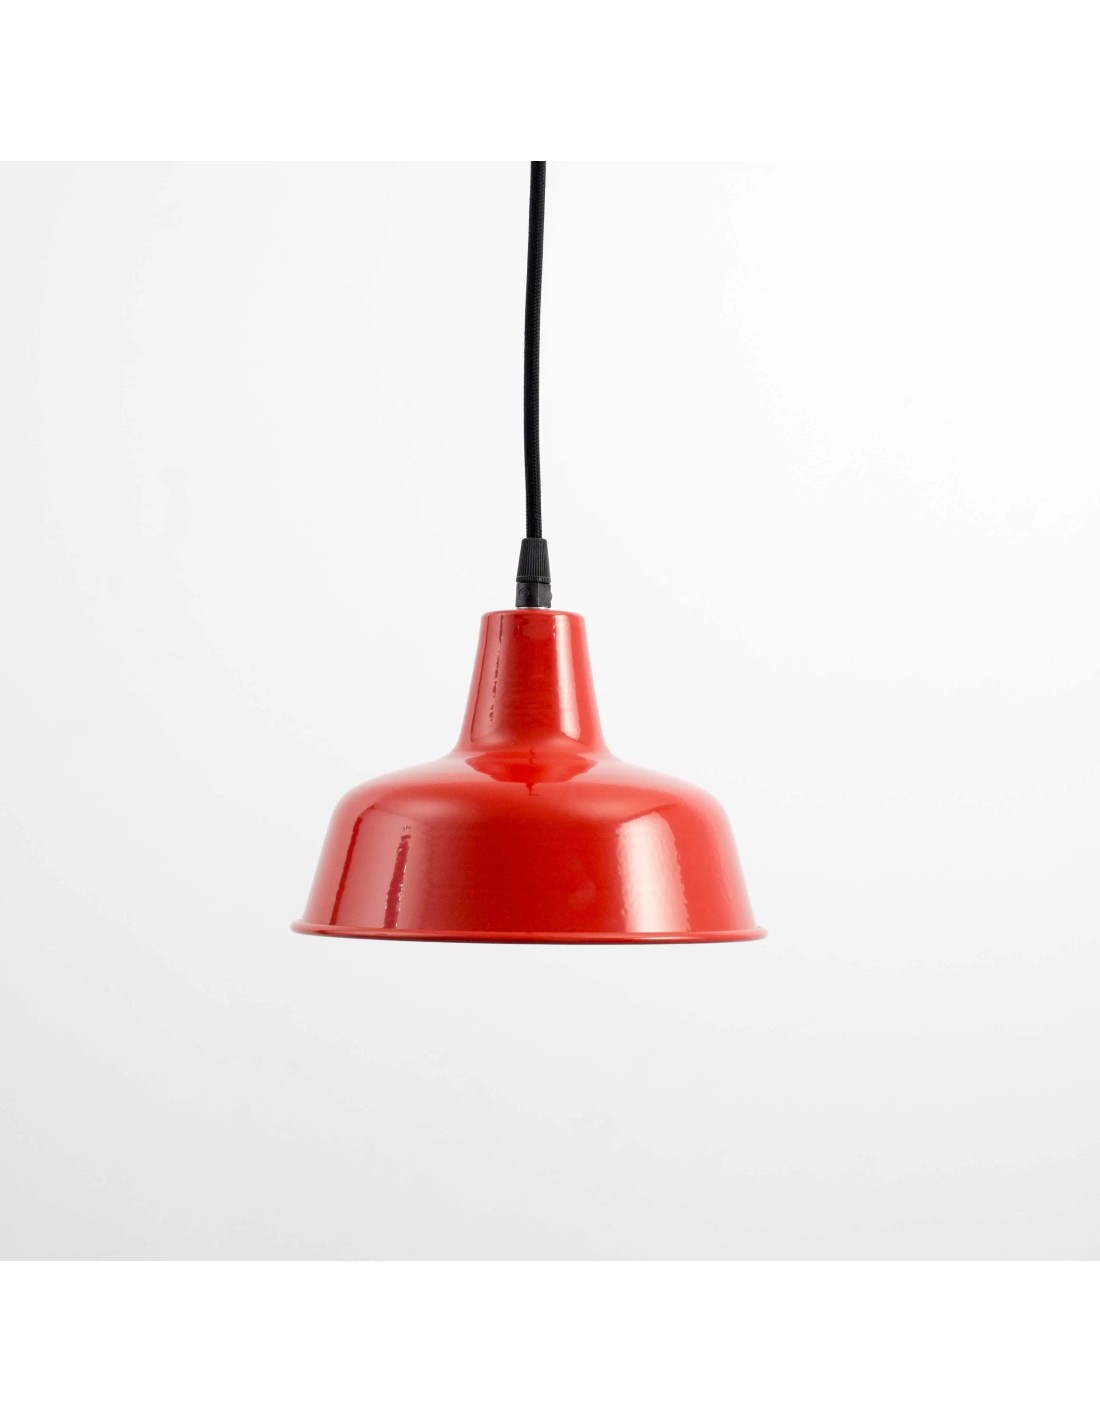 lámpara de techo ideal acabado en color rojo brillo por el exterior y blanco en el interior